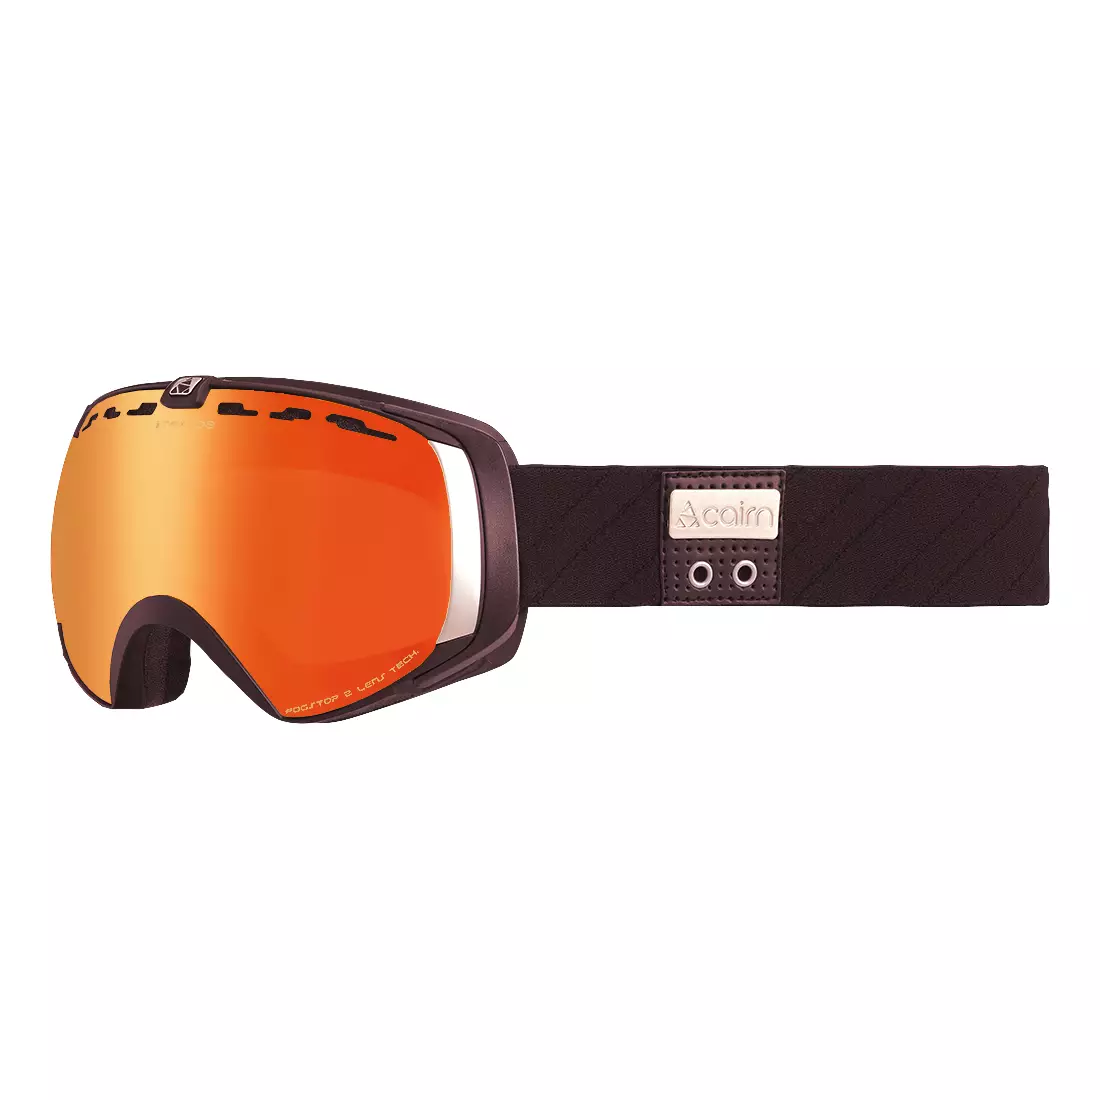 CAIRN STRATOS SPX3000 IUM kerékpáros szemüveg, narancssárga